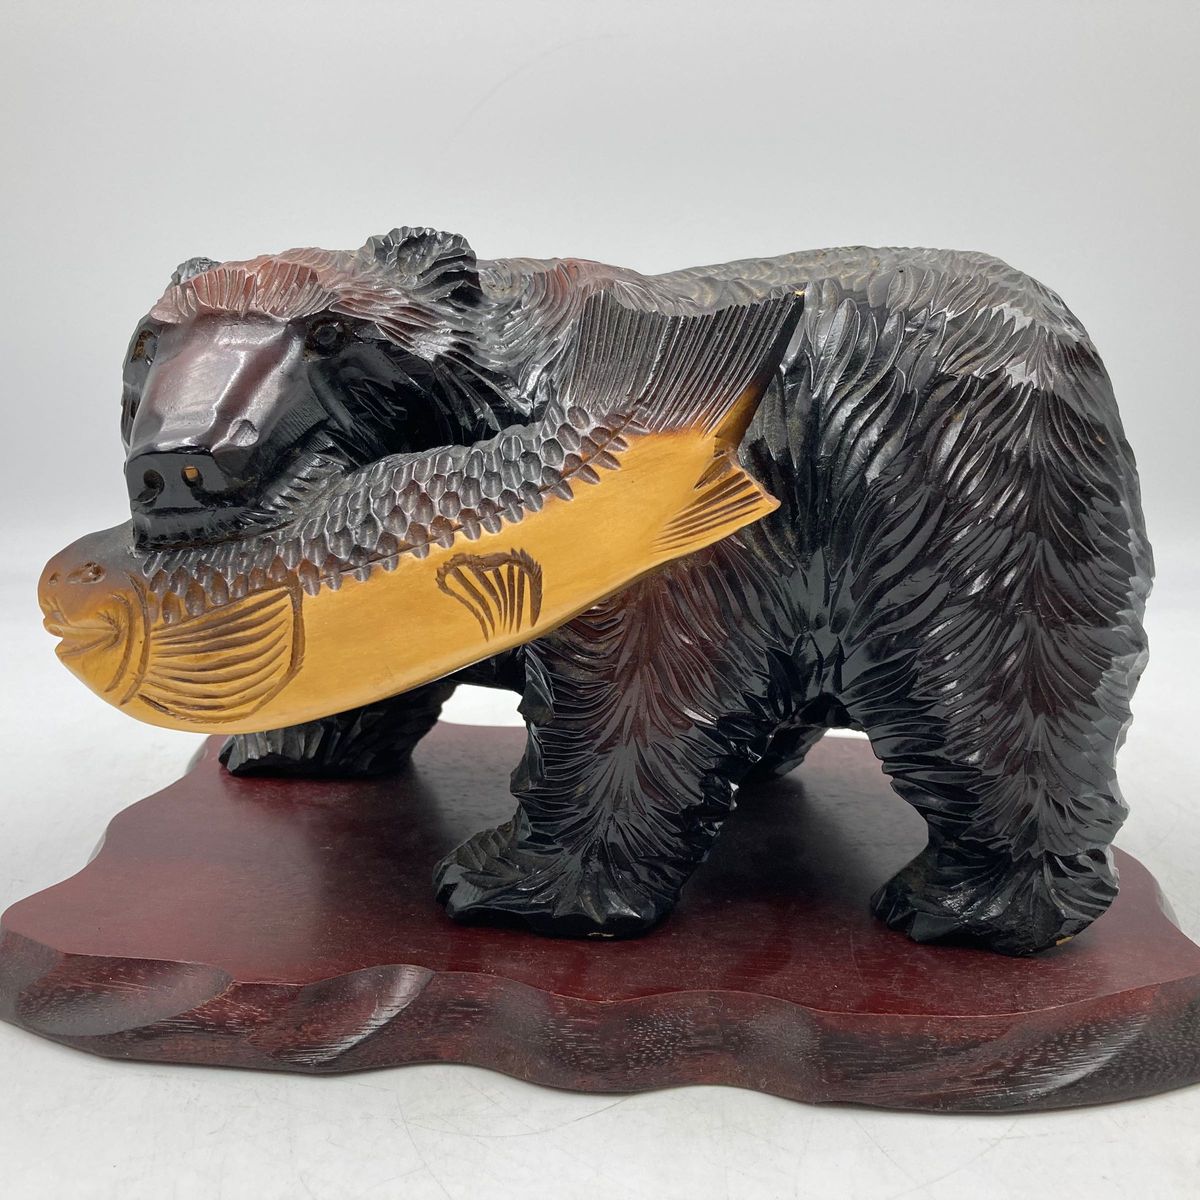 木彫りの熊 くま 置物 台座付 伝統工芸 北海道 アンティーク インテリア 民芸品 オブジェ